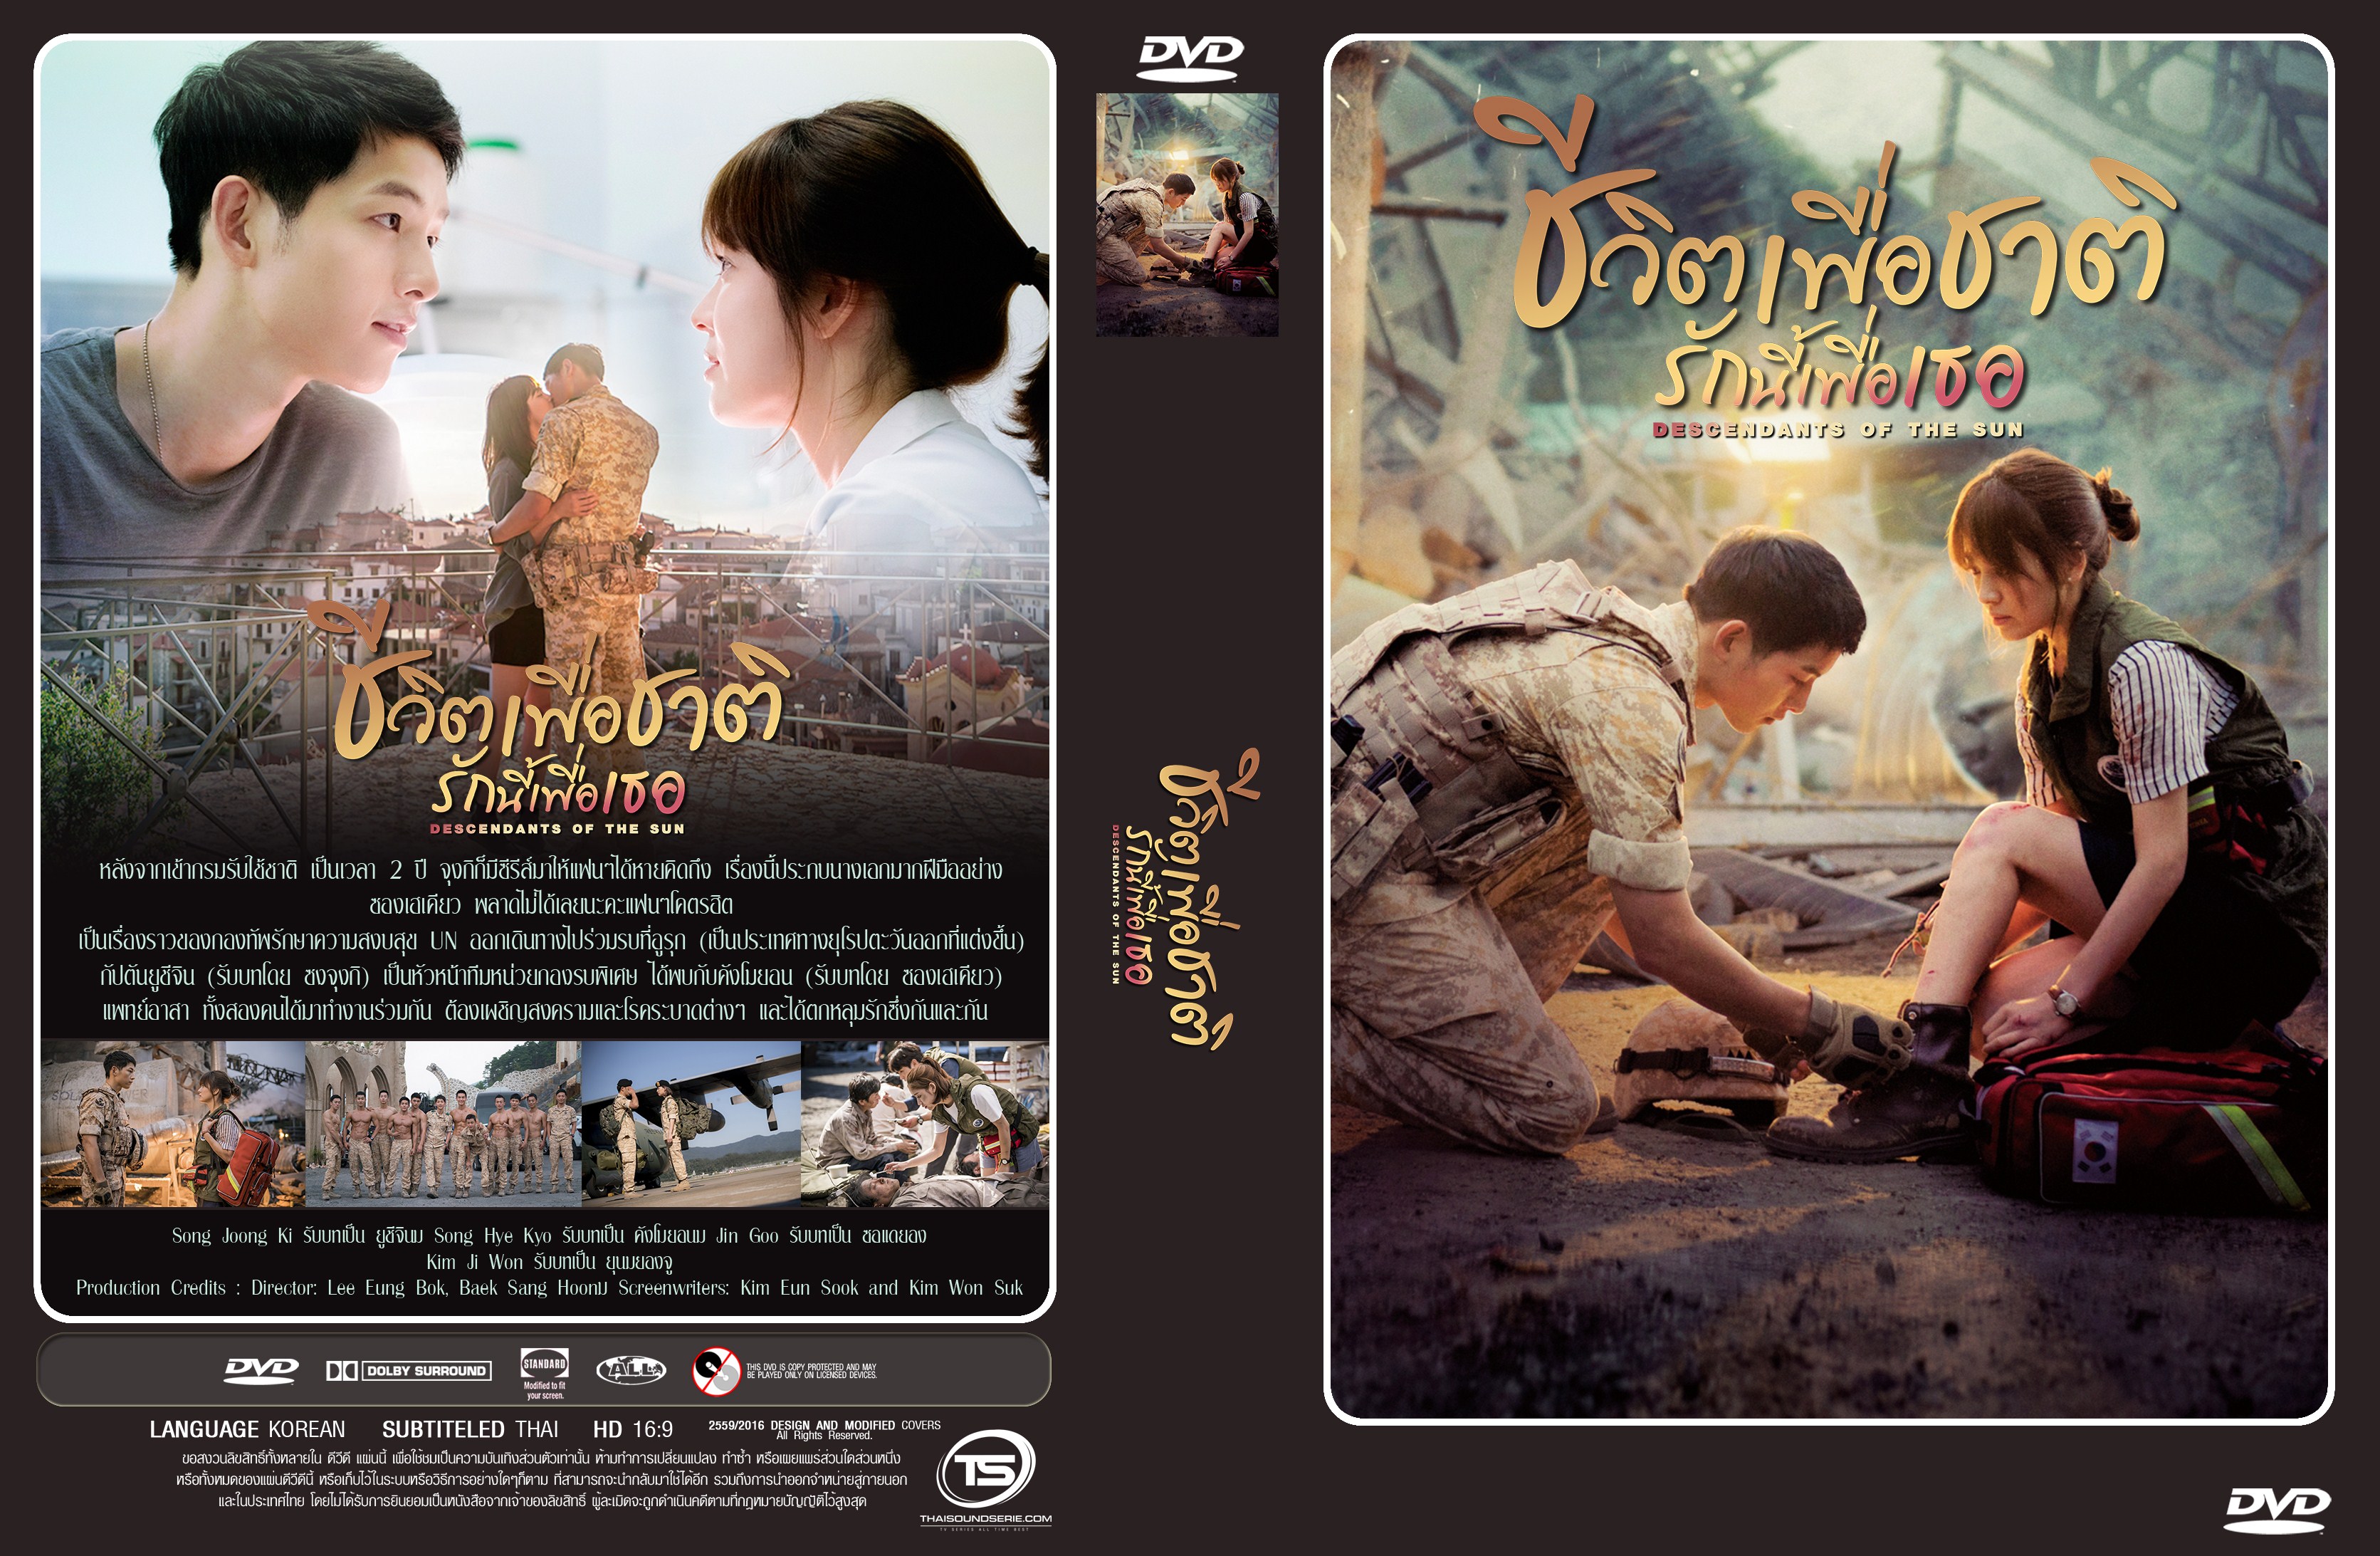 ซีรีย์เกาหลี Descendants of the Sun ชีวิตเพื่อชาติ รักนี้เพื่อเธอ (พากย์ไทย+ซับไทย) DVD 4 แผ่นจบ